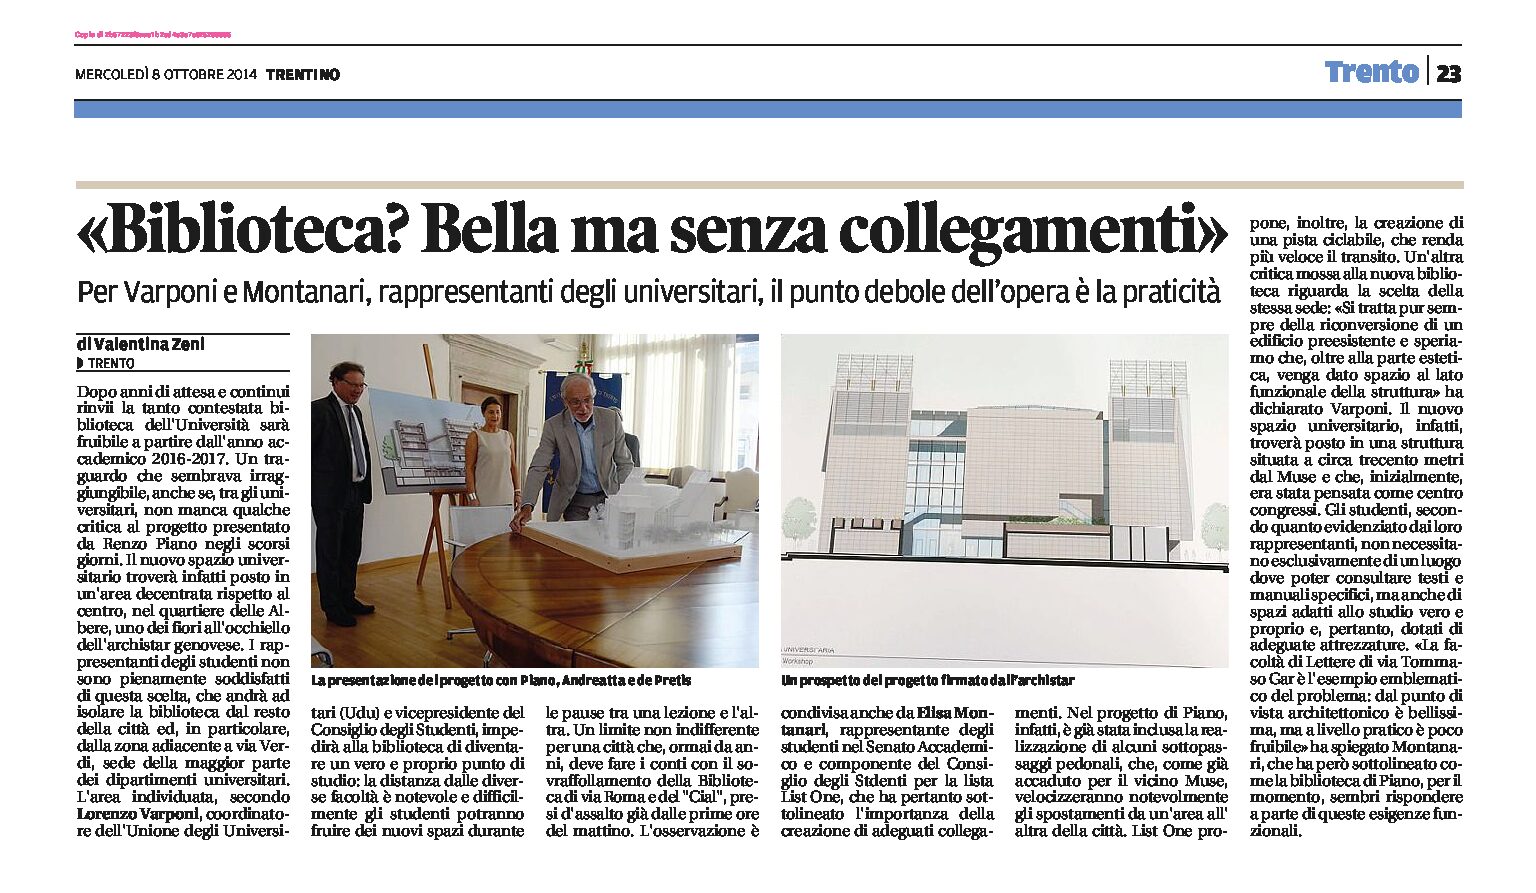 Trento: la biblioteca di Renzo Piano, bella ma senza collegamenti, secondo i rappresentanti universitari